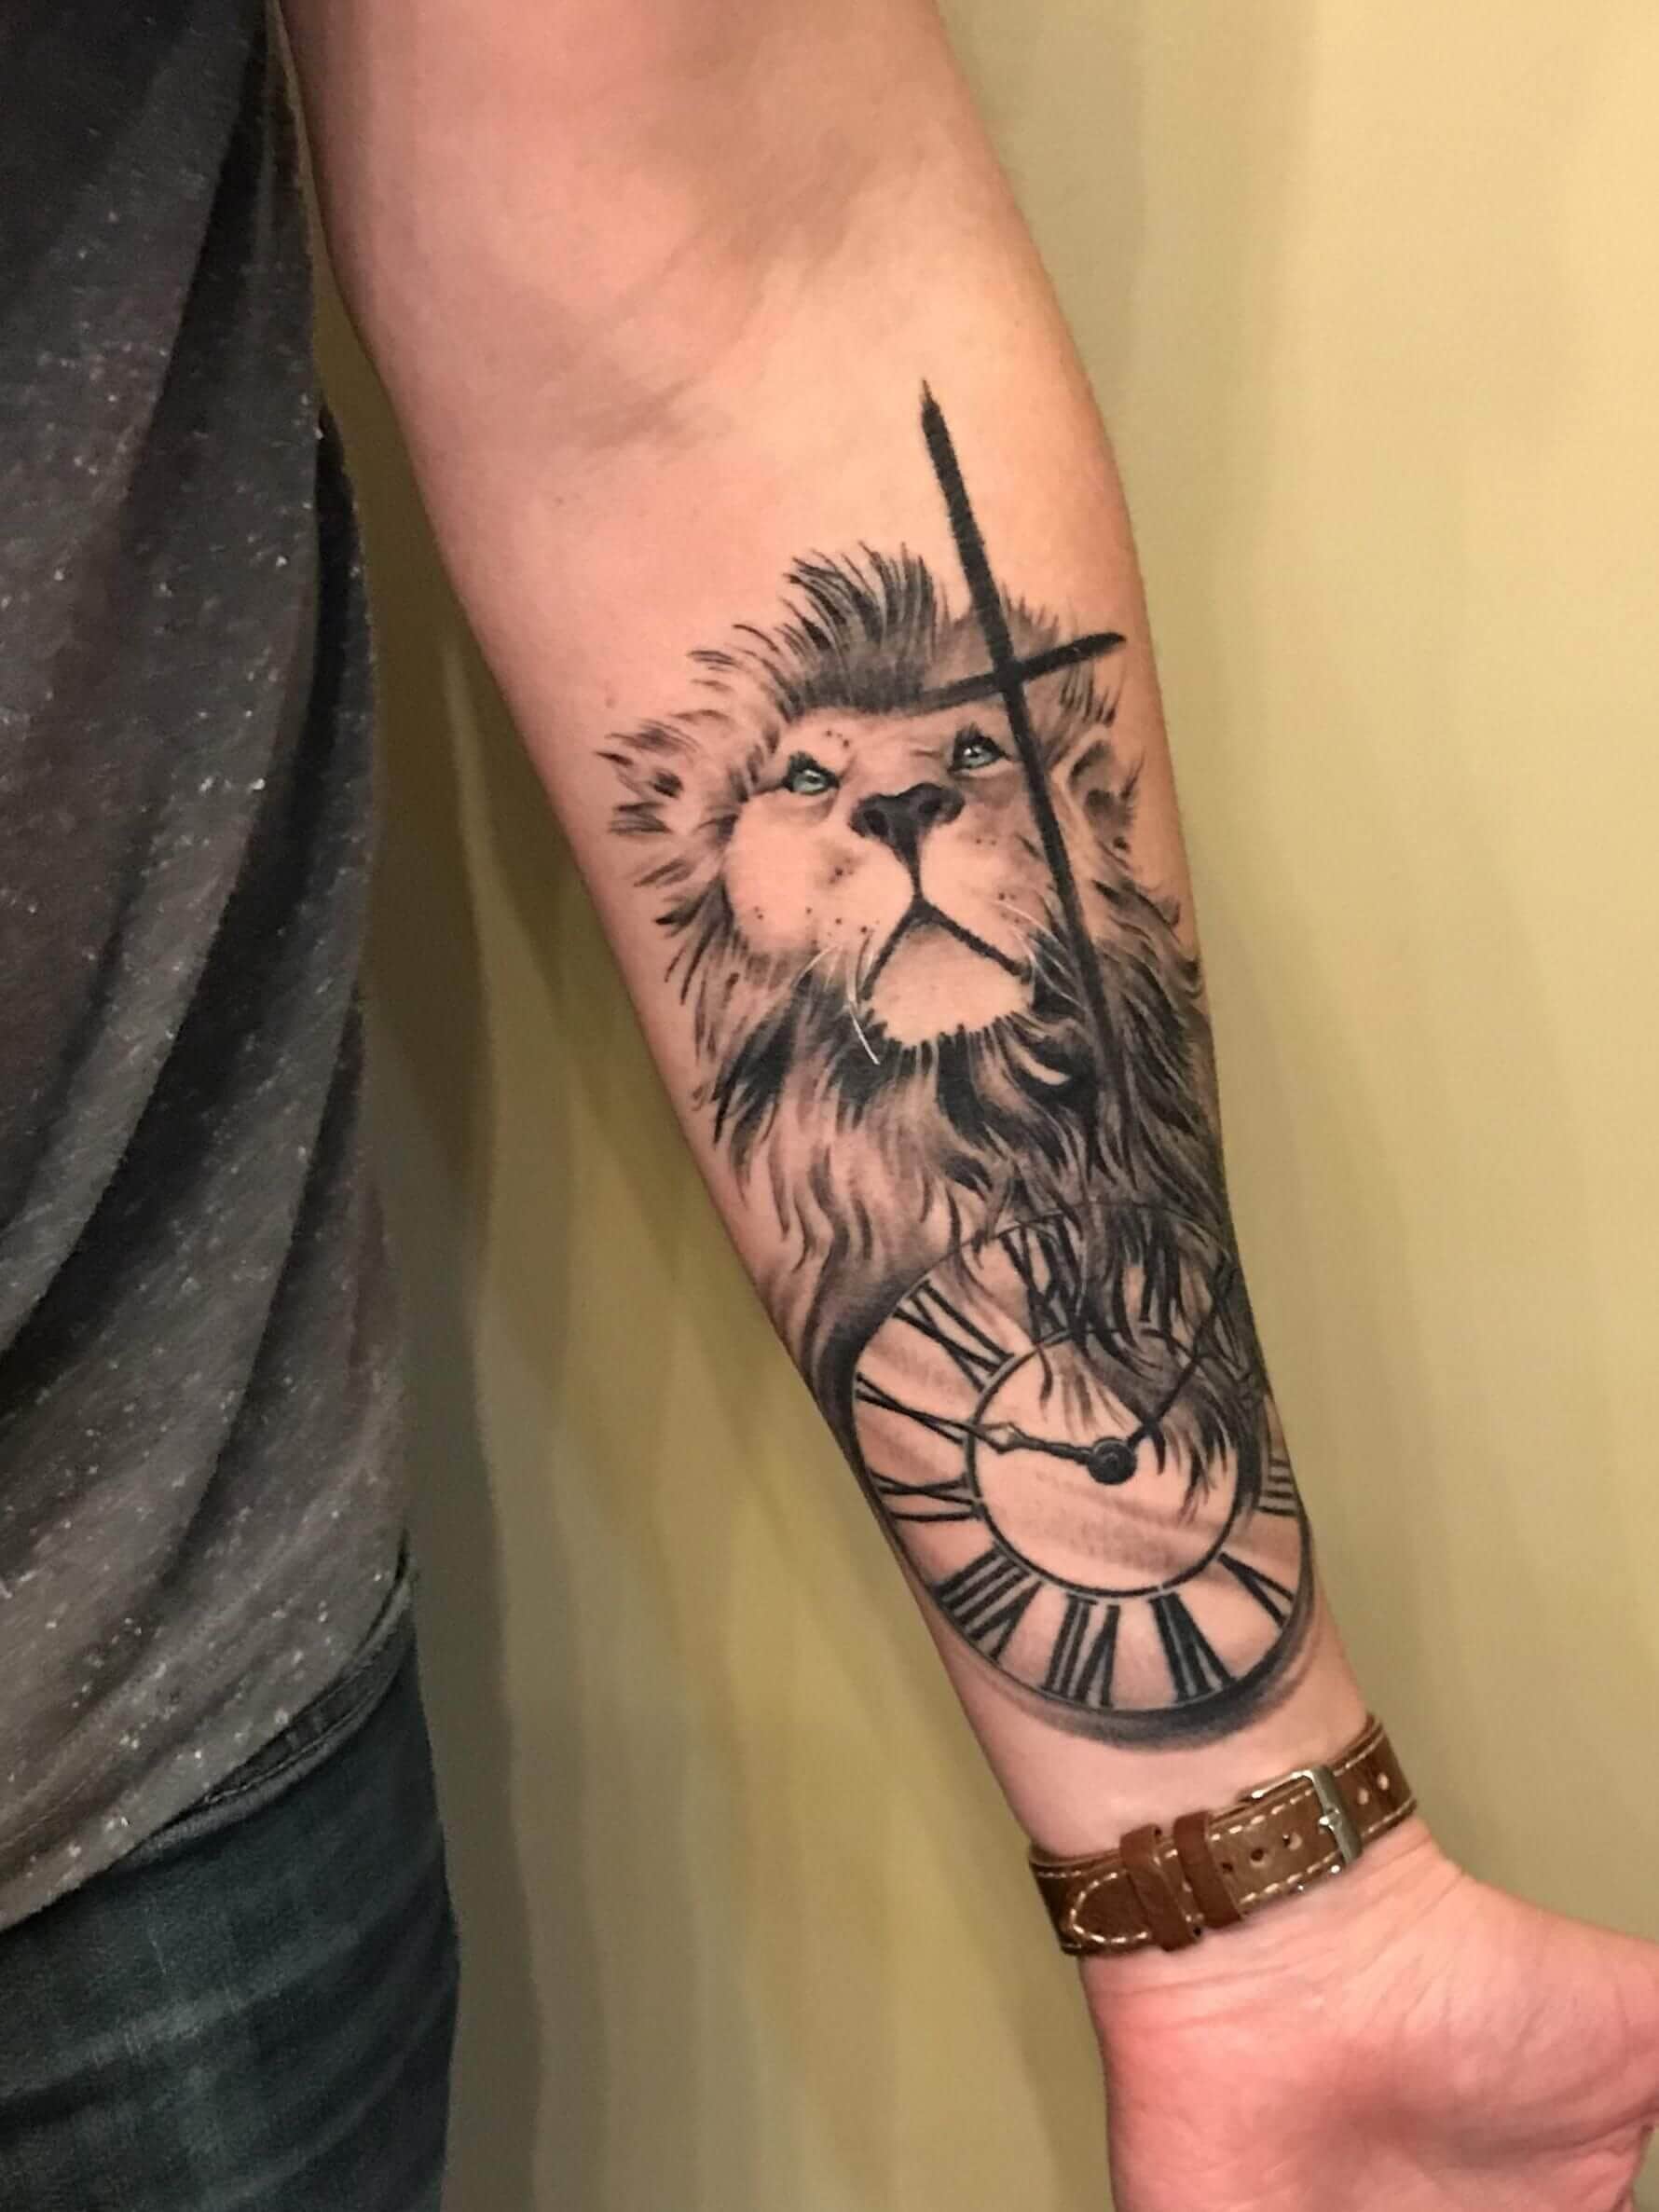 125-lion-tattoo-ideas-that-will-make-you-roar-wild-tattoo-art